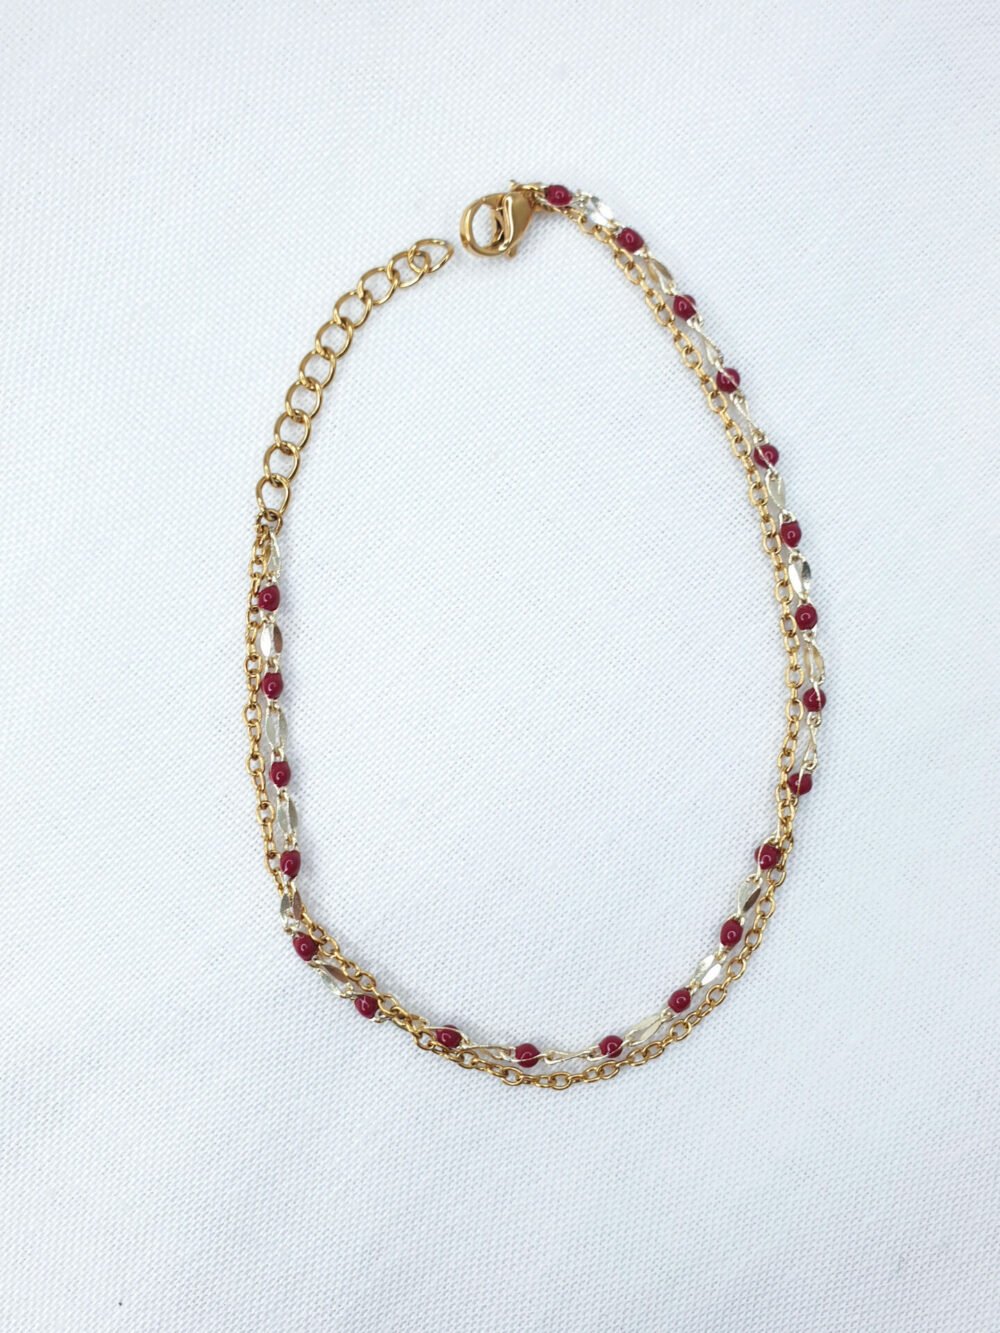 bijoux femme barcelone acier inoxydable laiton plaqué or doré fait main bracelet double chaine perle émaille coloré rouge foncé bordeaux